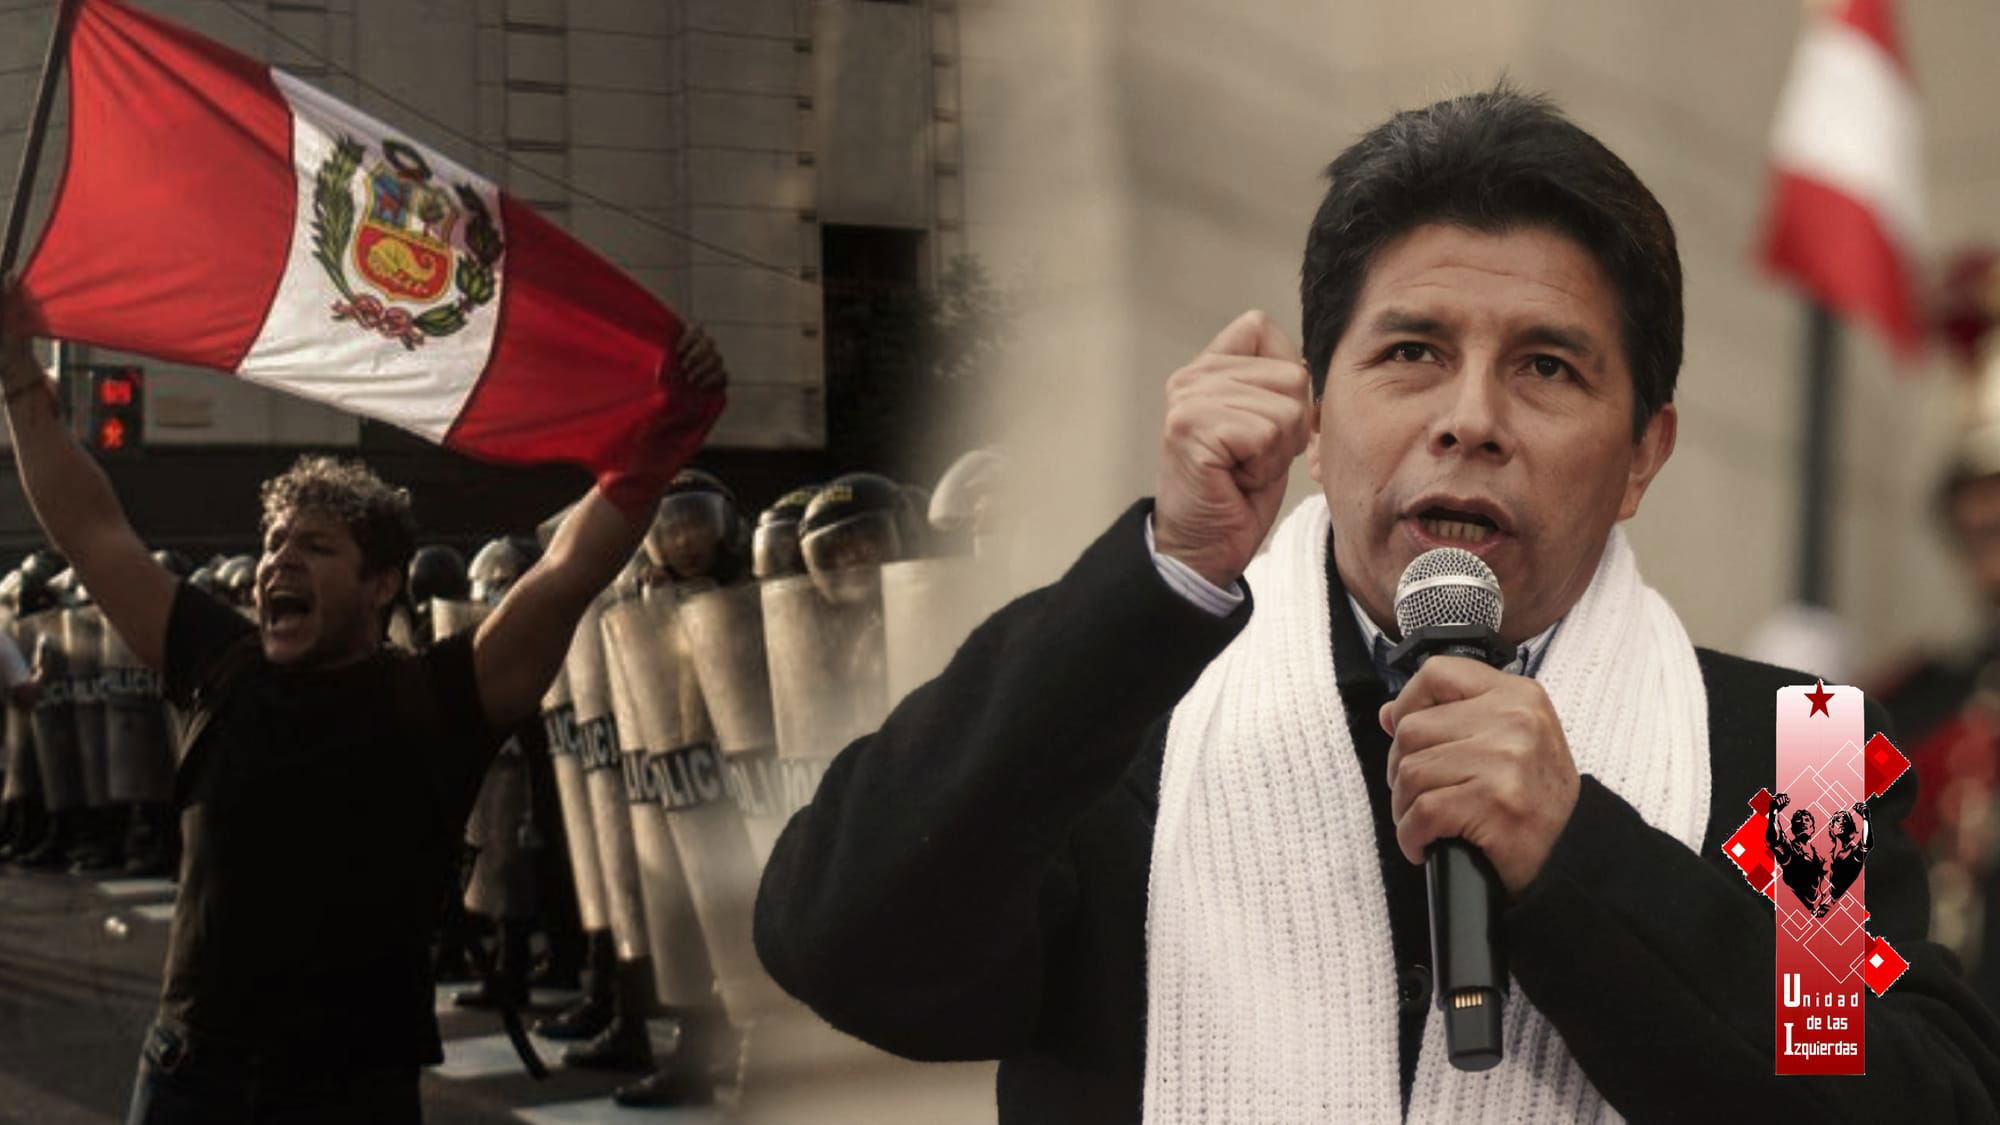 Alto a la represión en Perú y apoyo total a la lucha popular por la democracia y la transformación